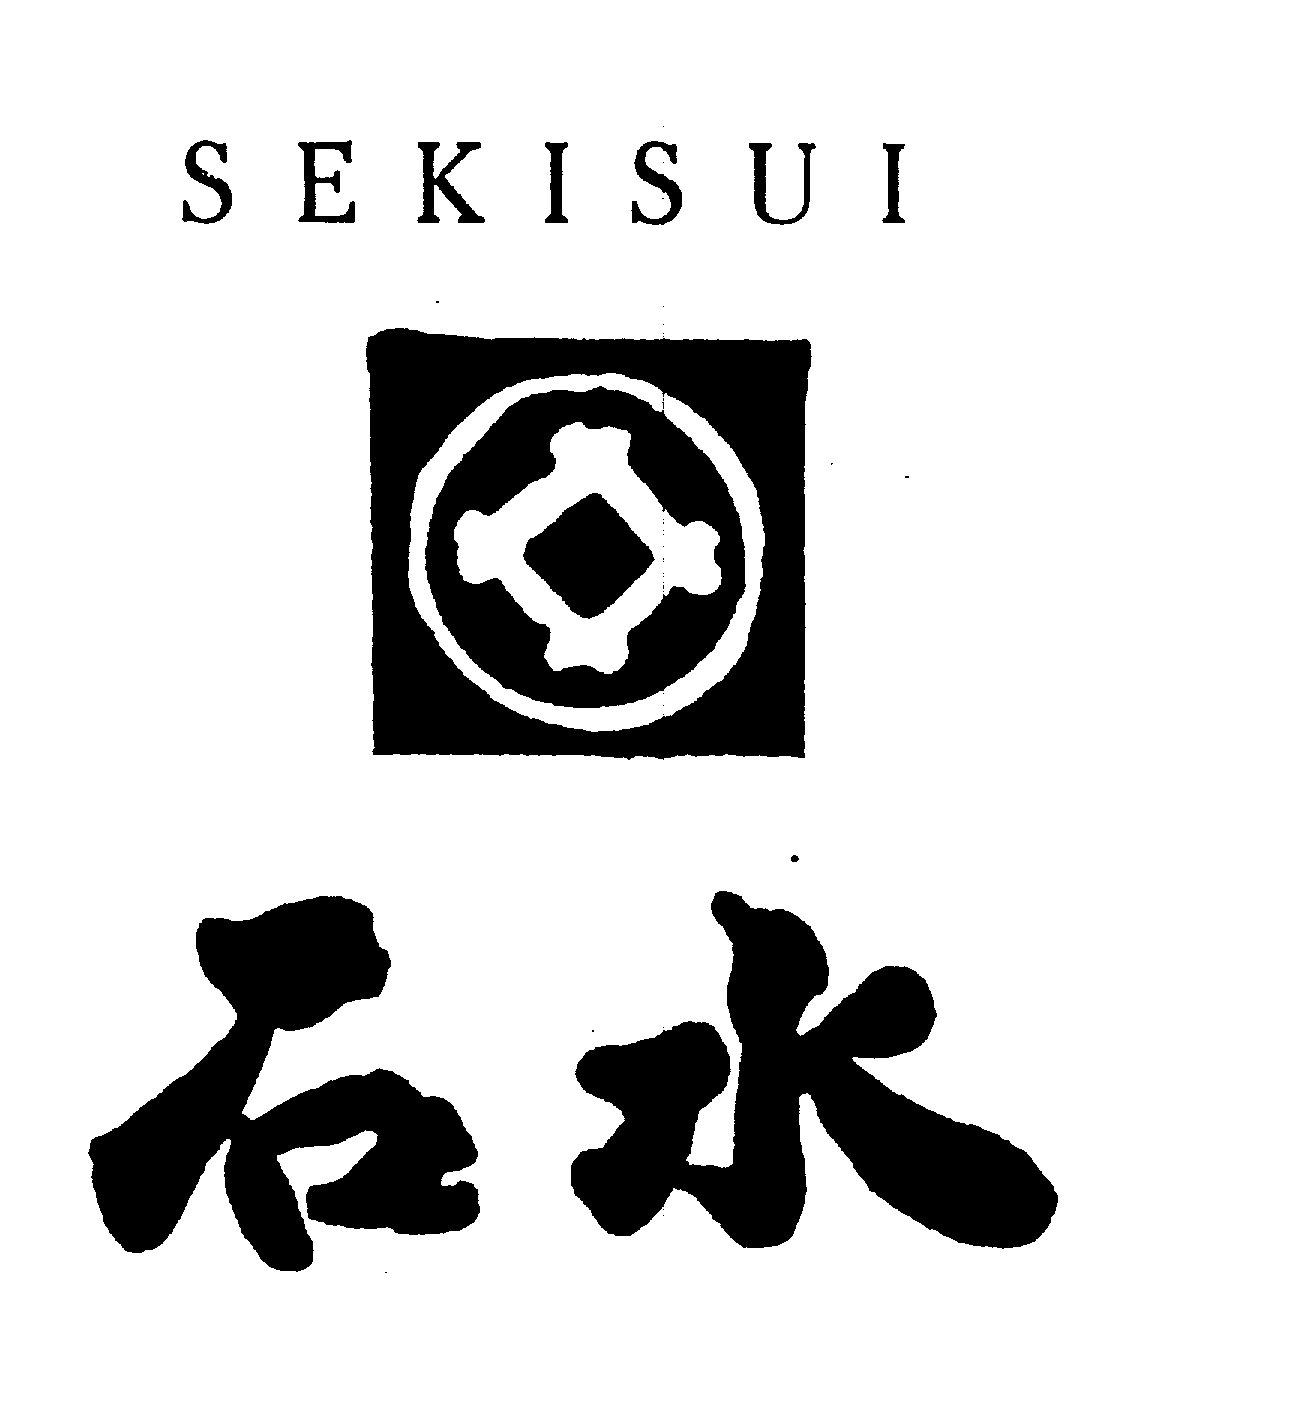 SEKISUI